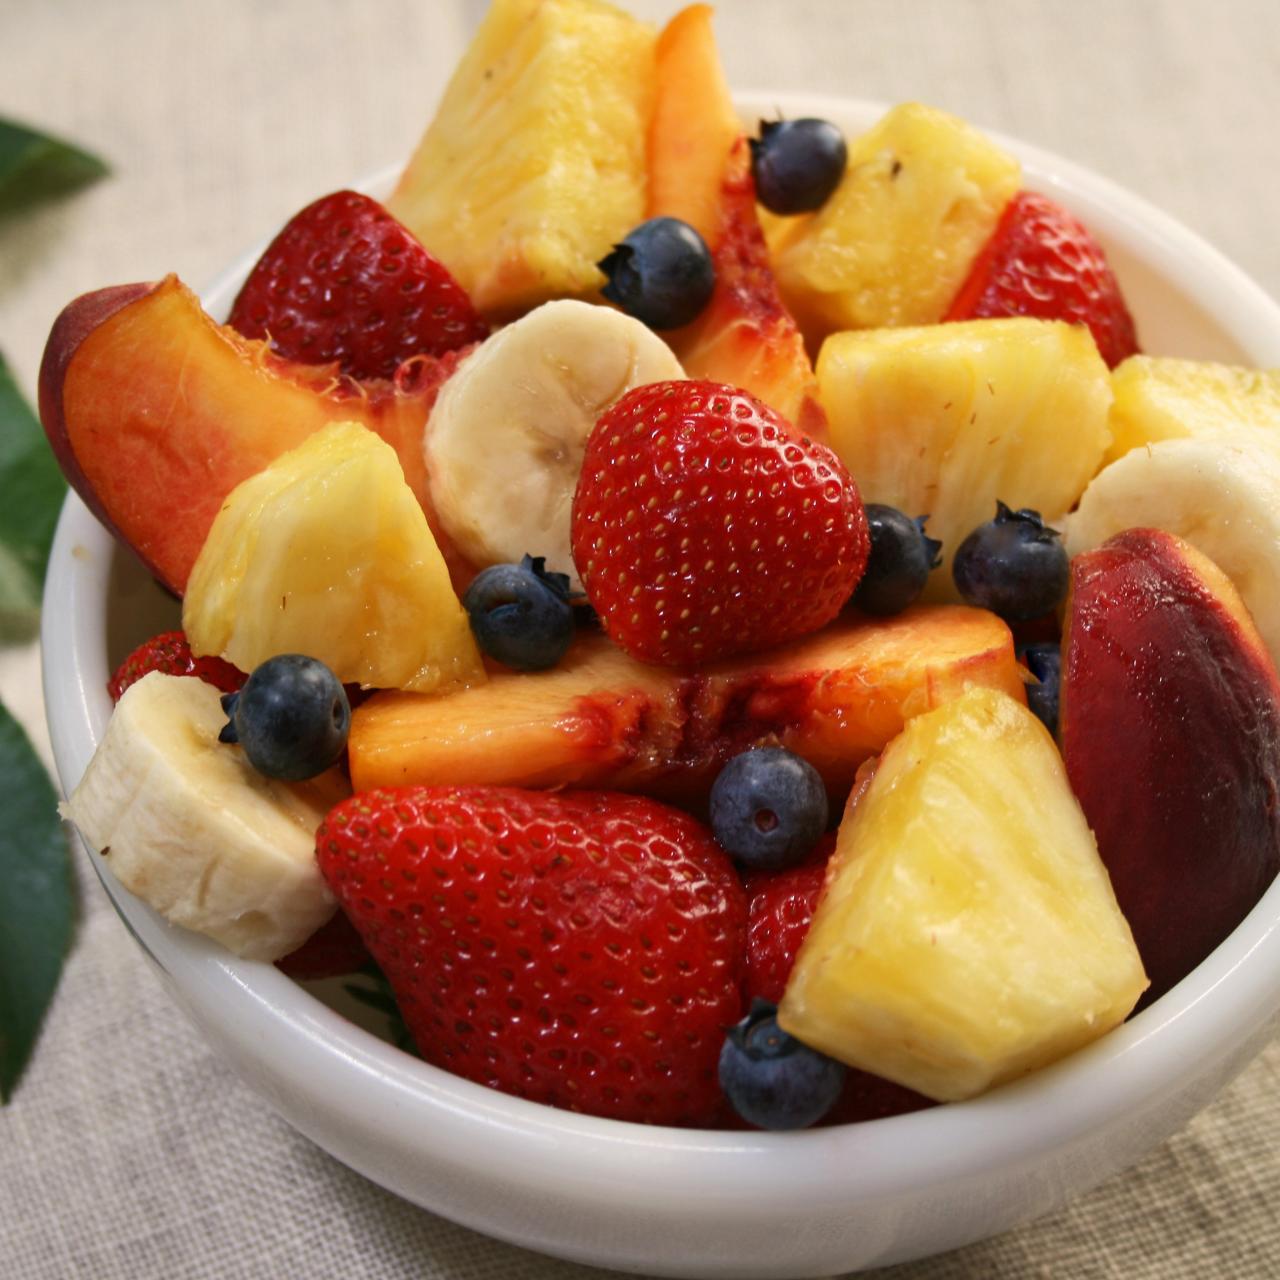 Ranking 3 fruits everyday: Light Fruit